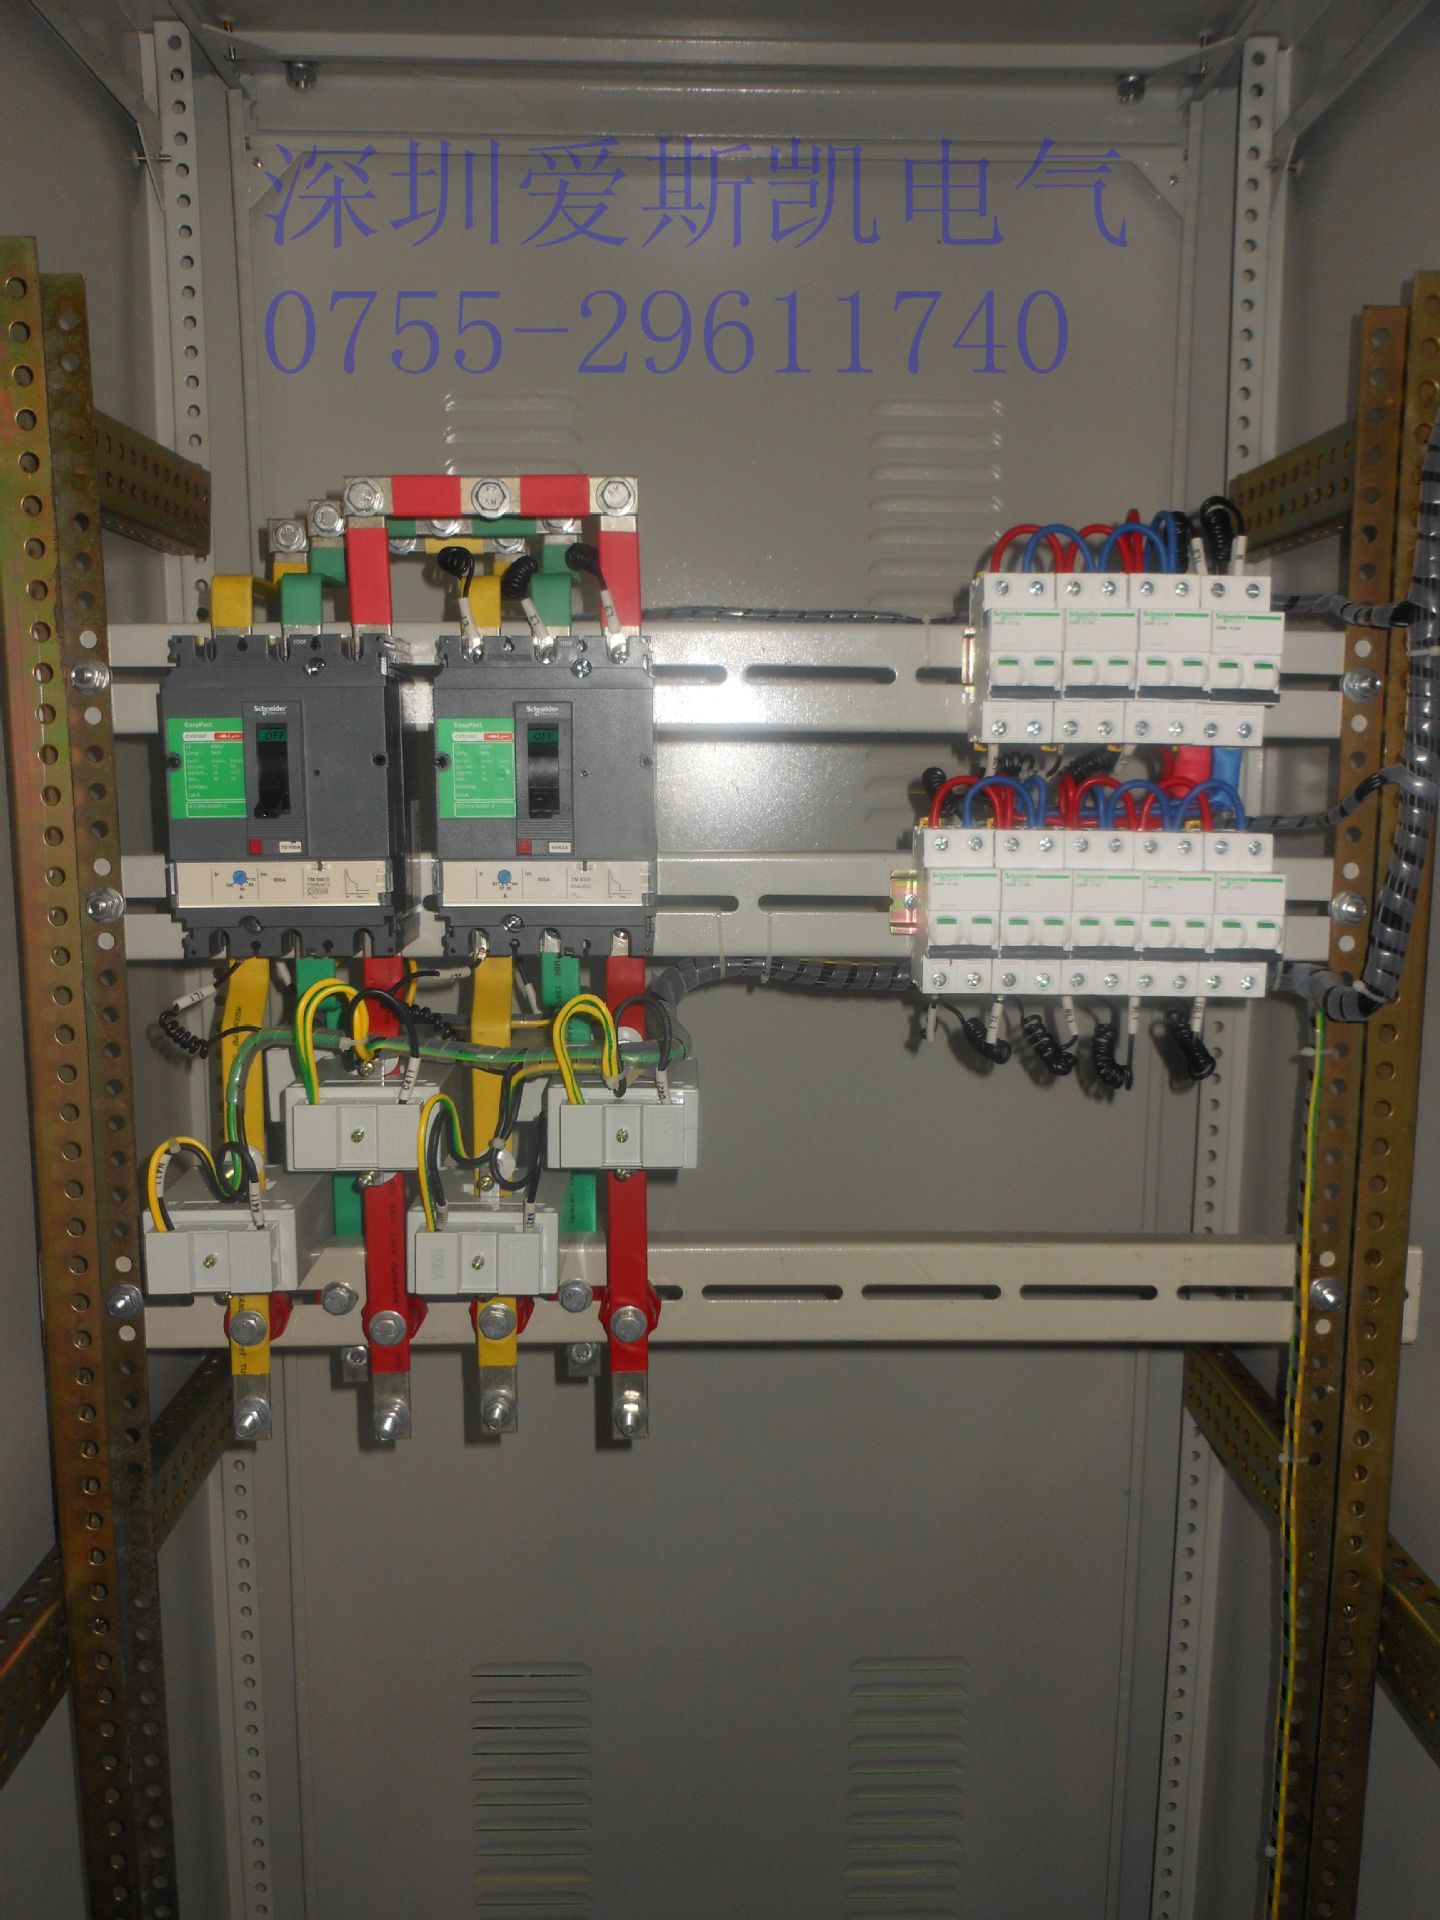 定制工厂动力柜,低压xl-21动力柜配电柜,成套电气控制柜,厂家直销